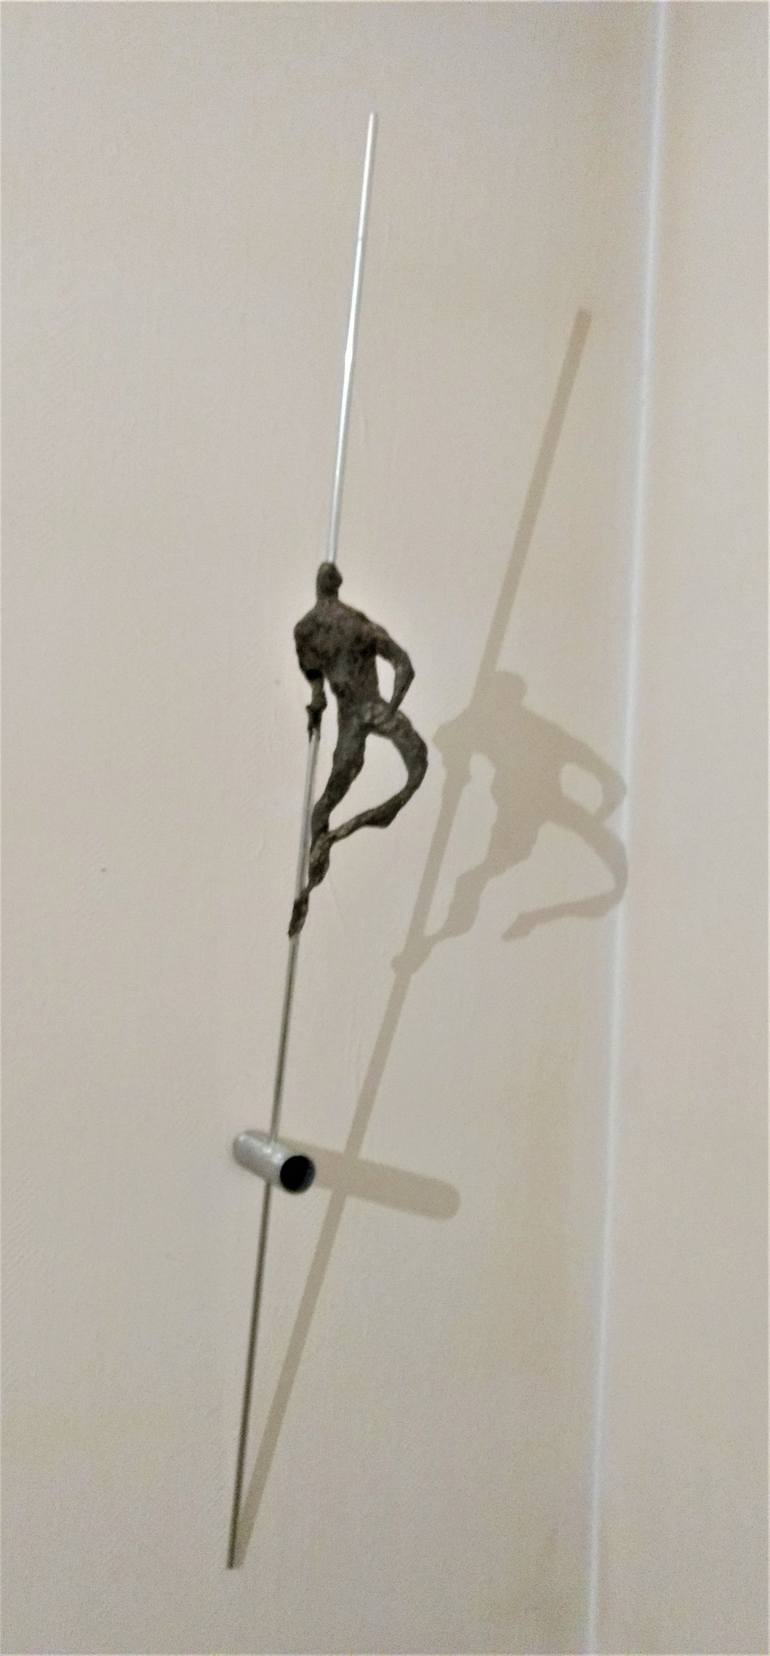 Original Abstract Men Sculpture by Rainer Schwenkglenks